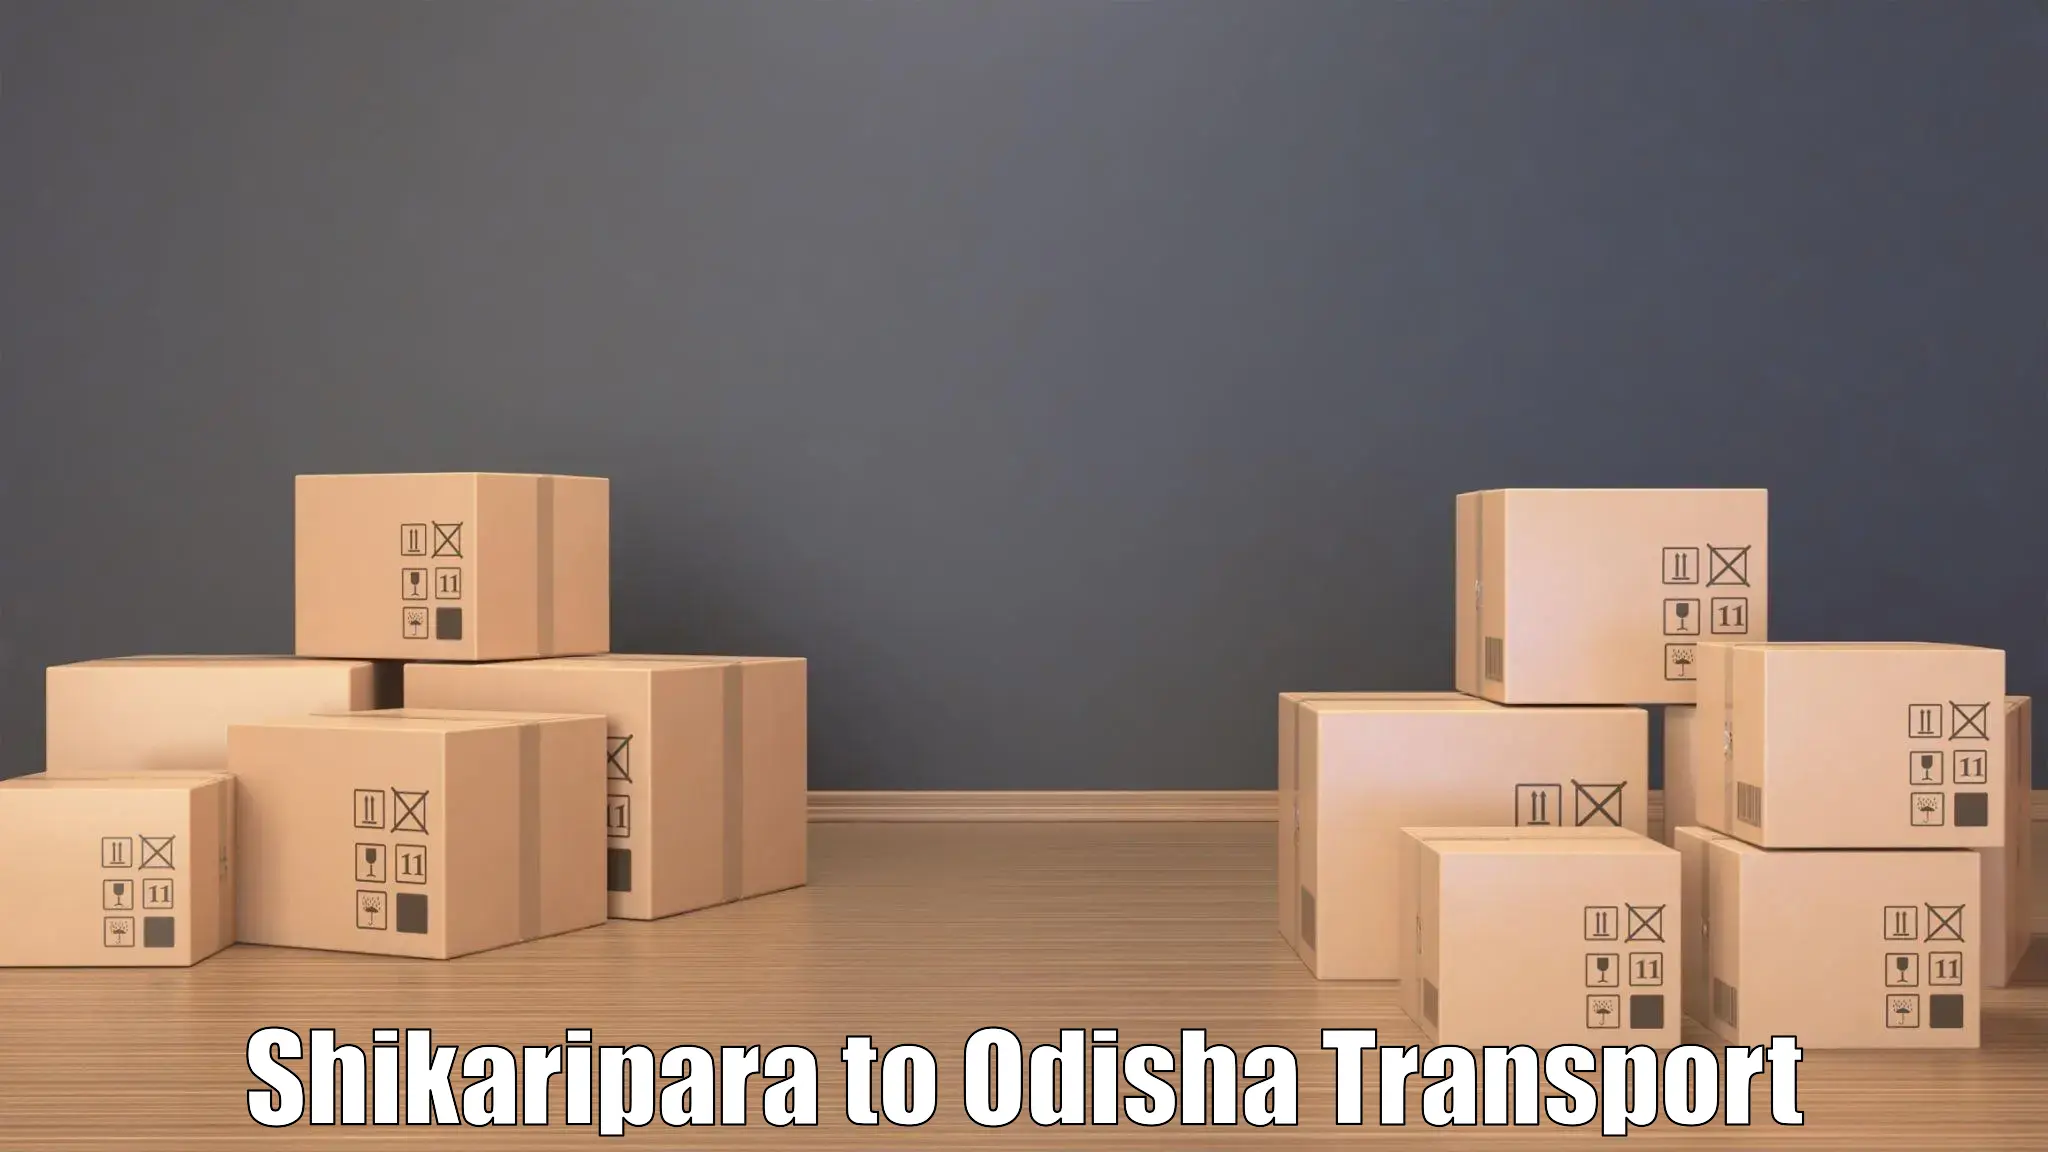 Daily parcel service transport Shikaripara to Paralakhemundi